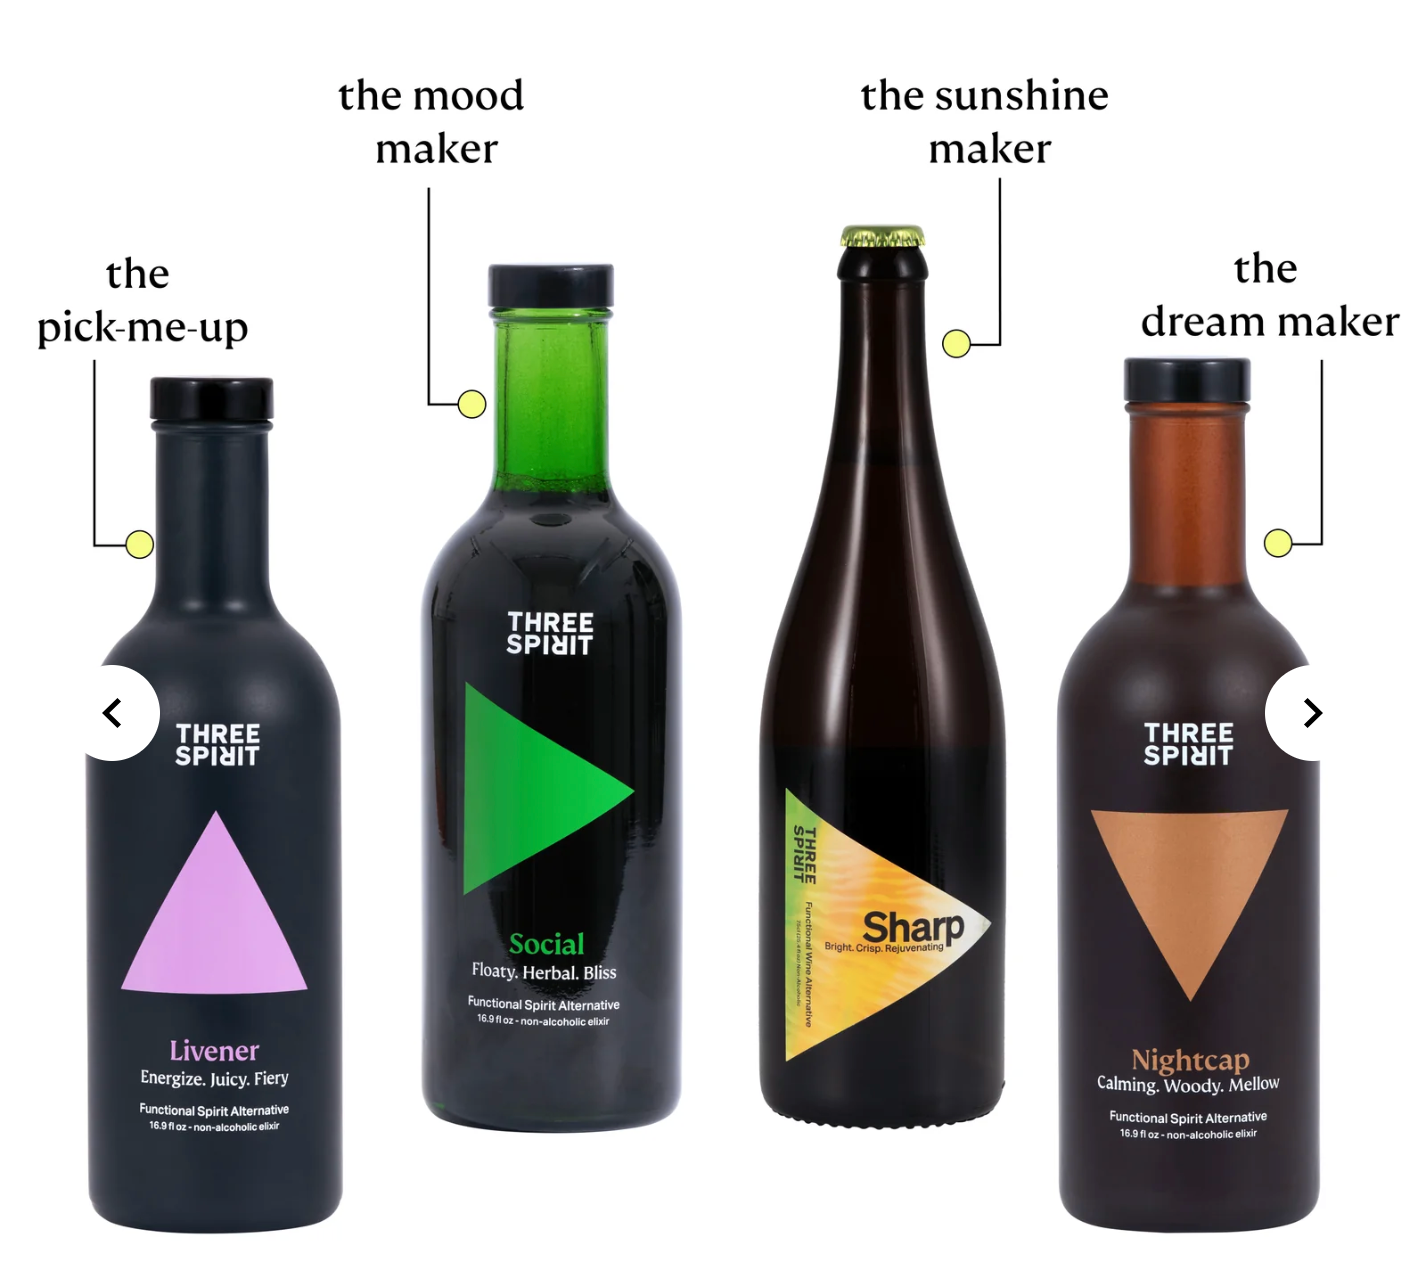 4 bottles. livener, social, sharp and nightcap